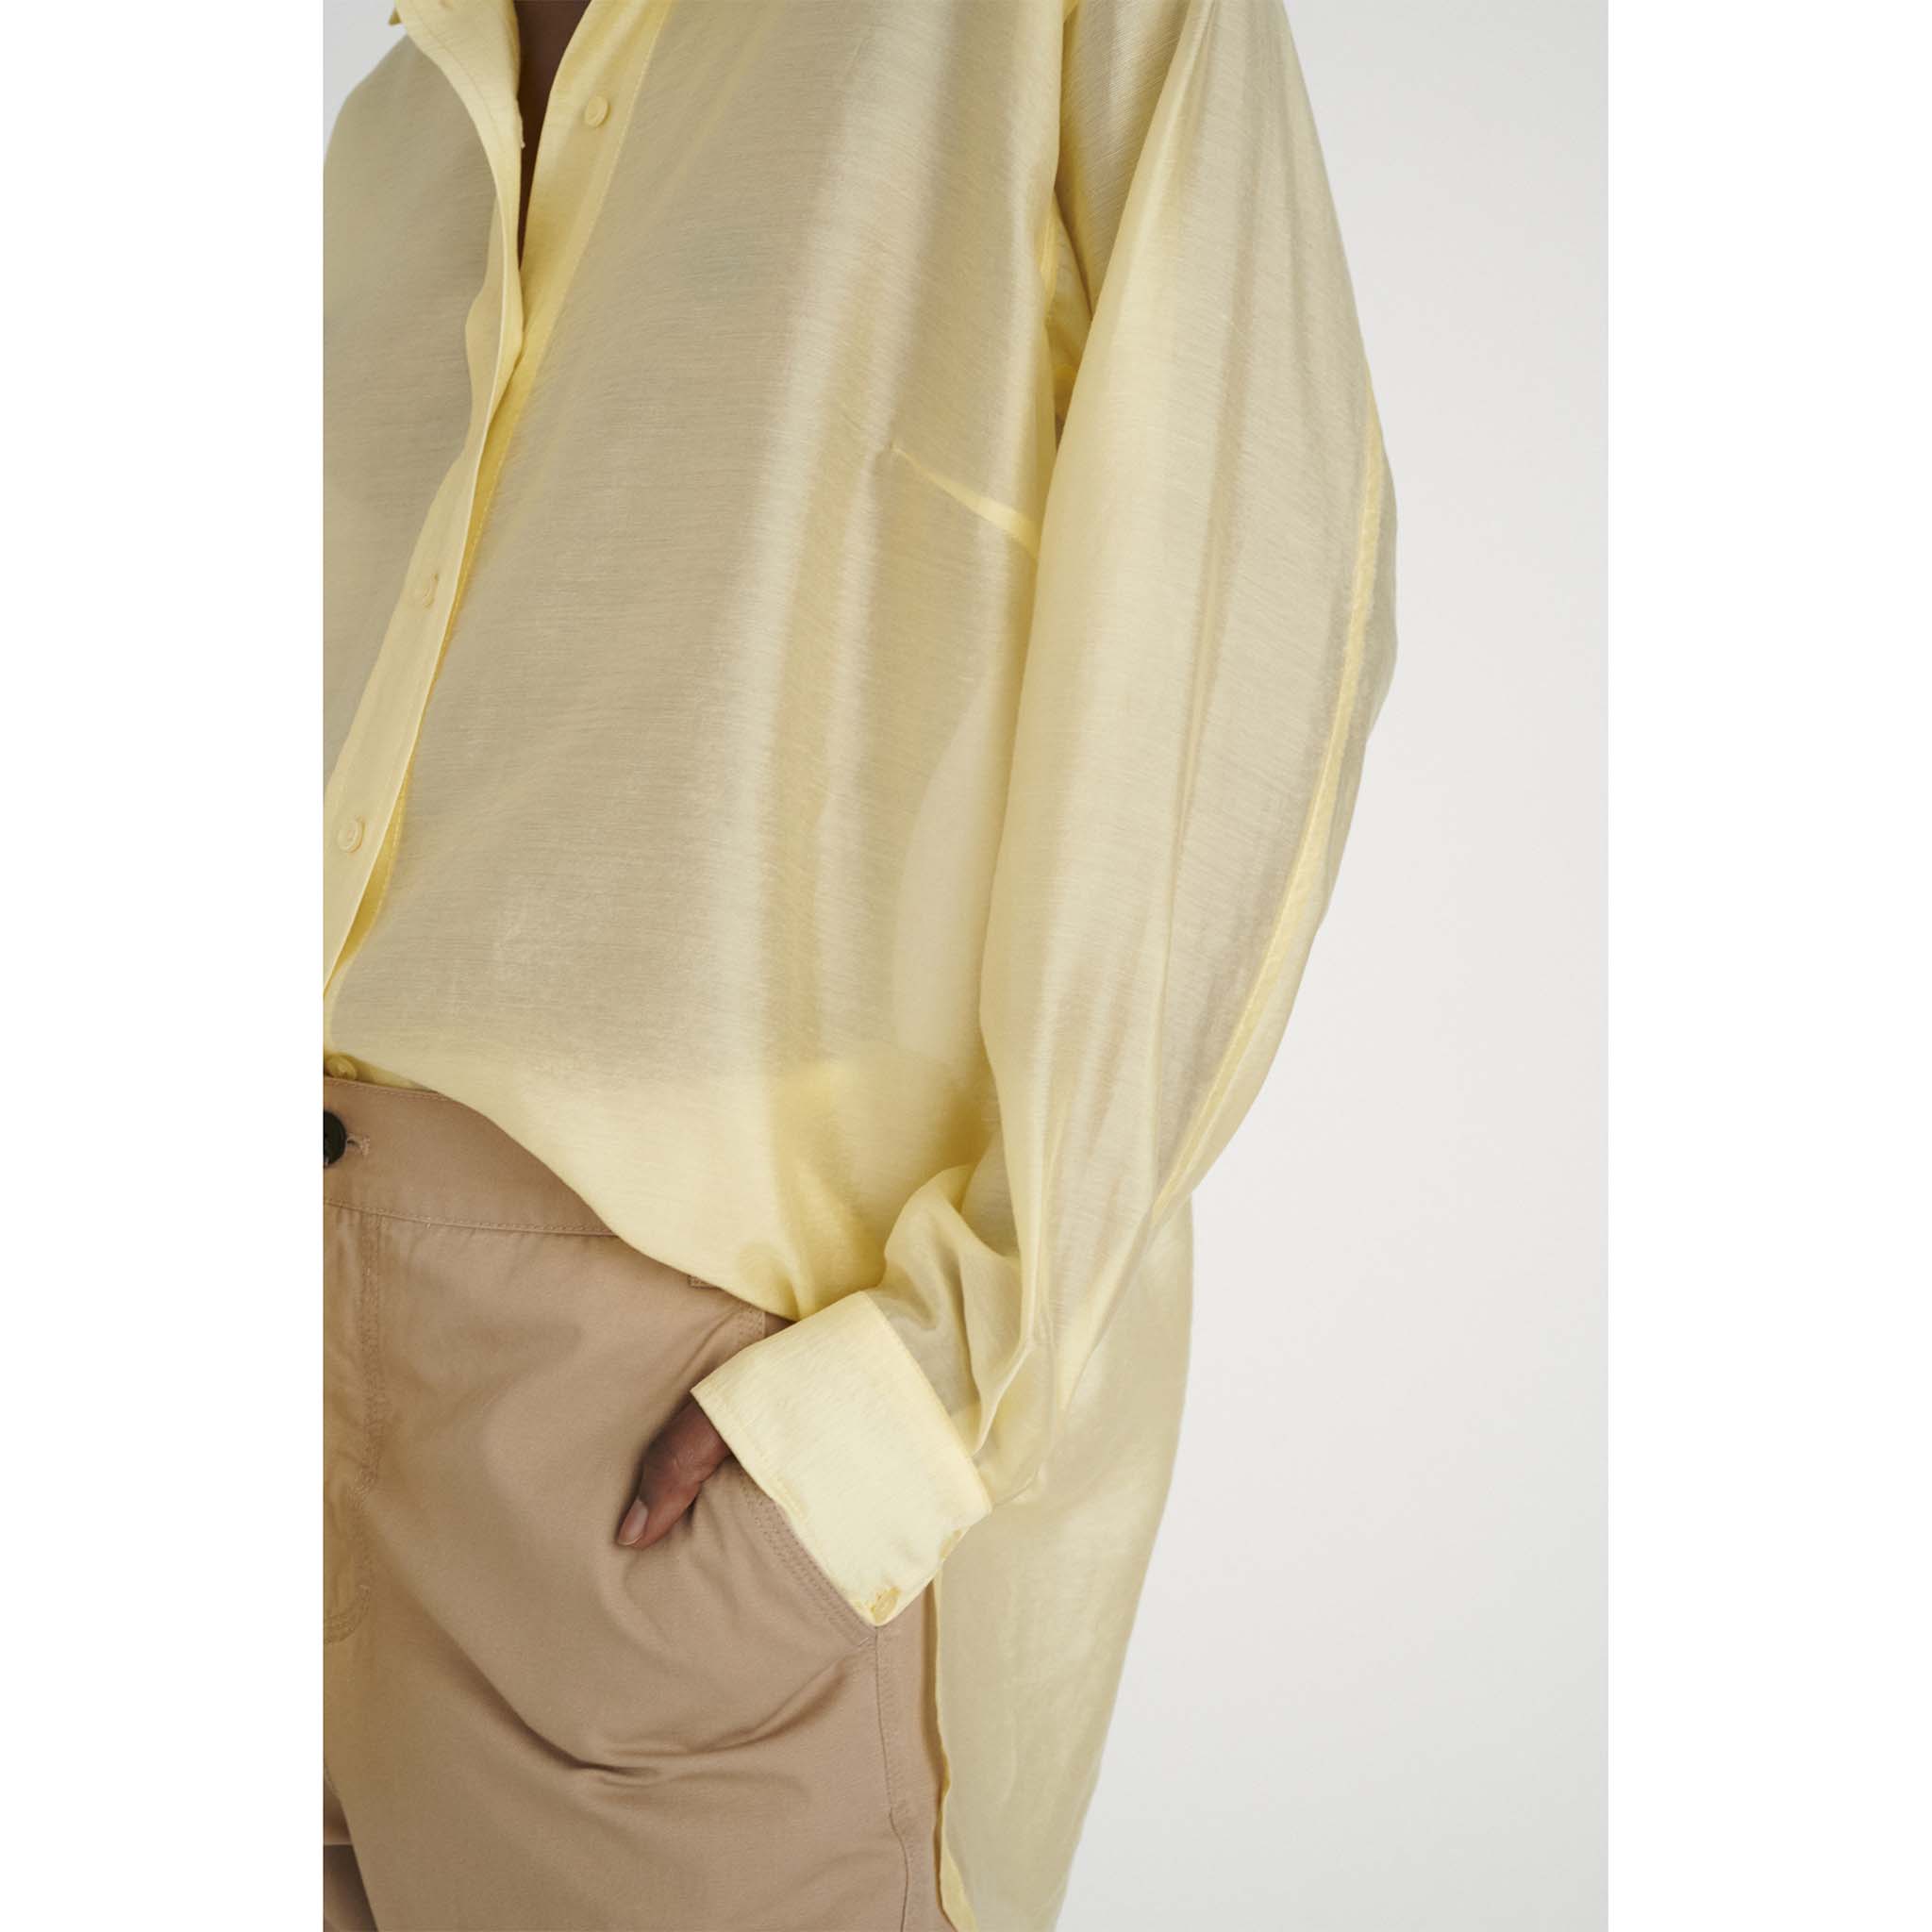 In Wear. Keltainen, hieman kiiltäväpintainen, läpikuultava naisten väljä paitapusero. Lähikuva mallin päällä.